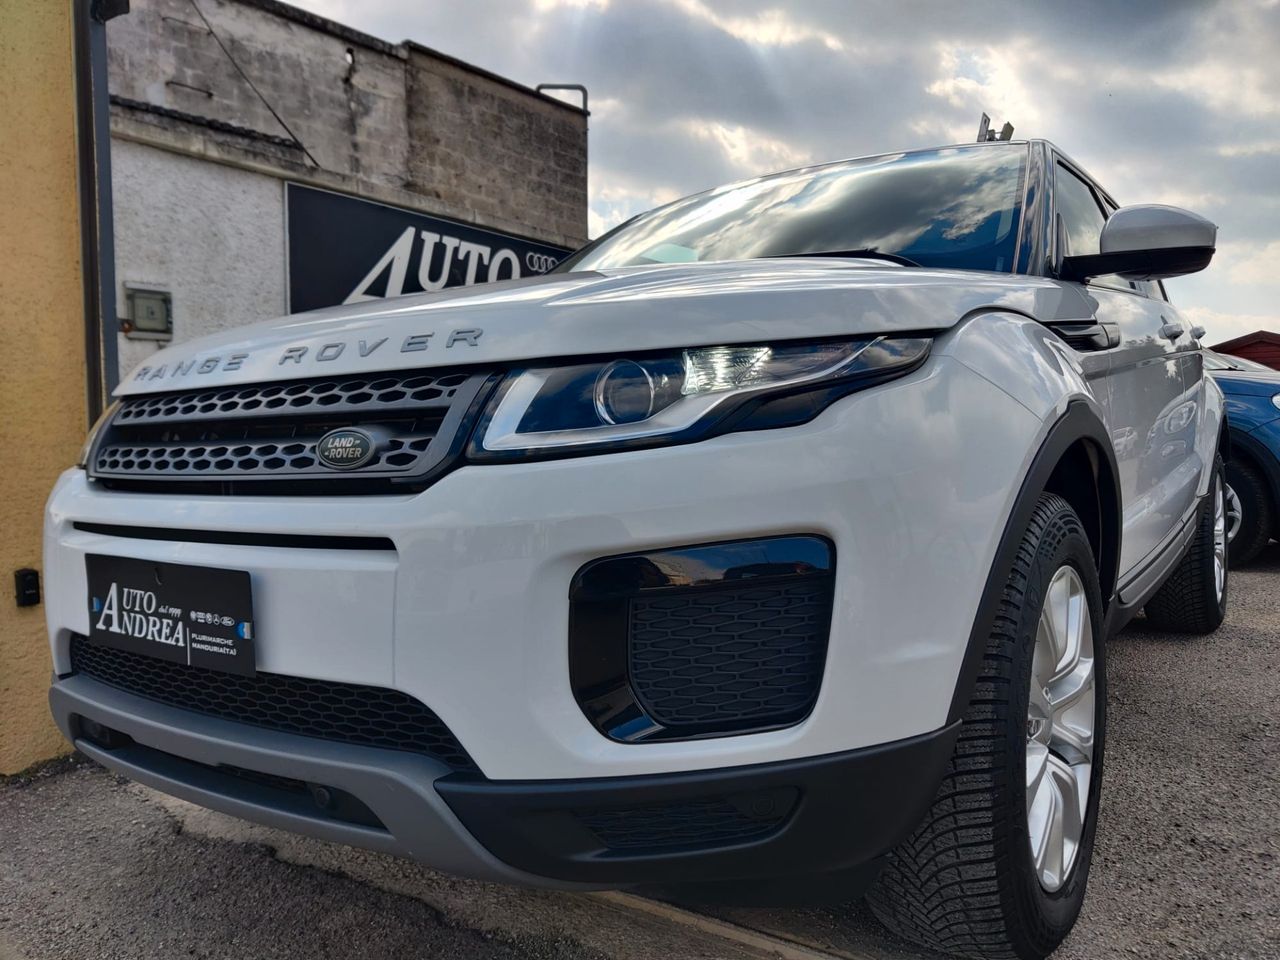 Land Rover evoque 2.0 td4 full navig cam led 2018